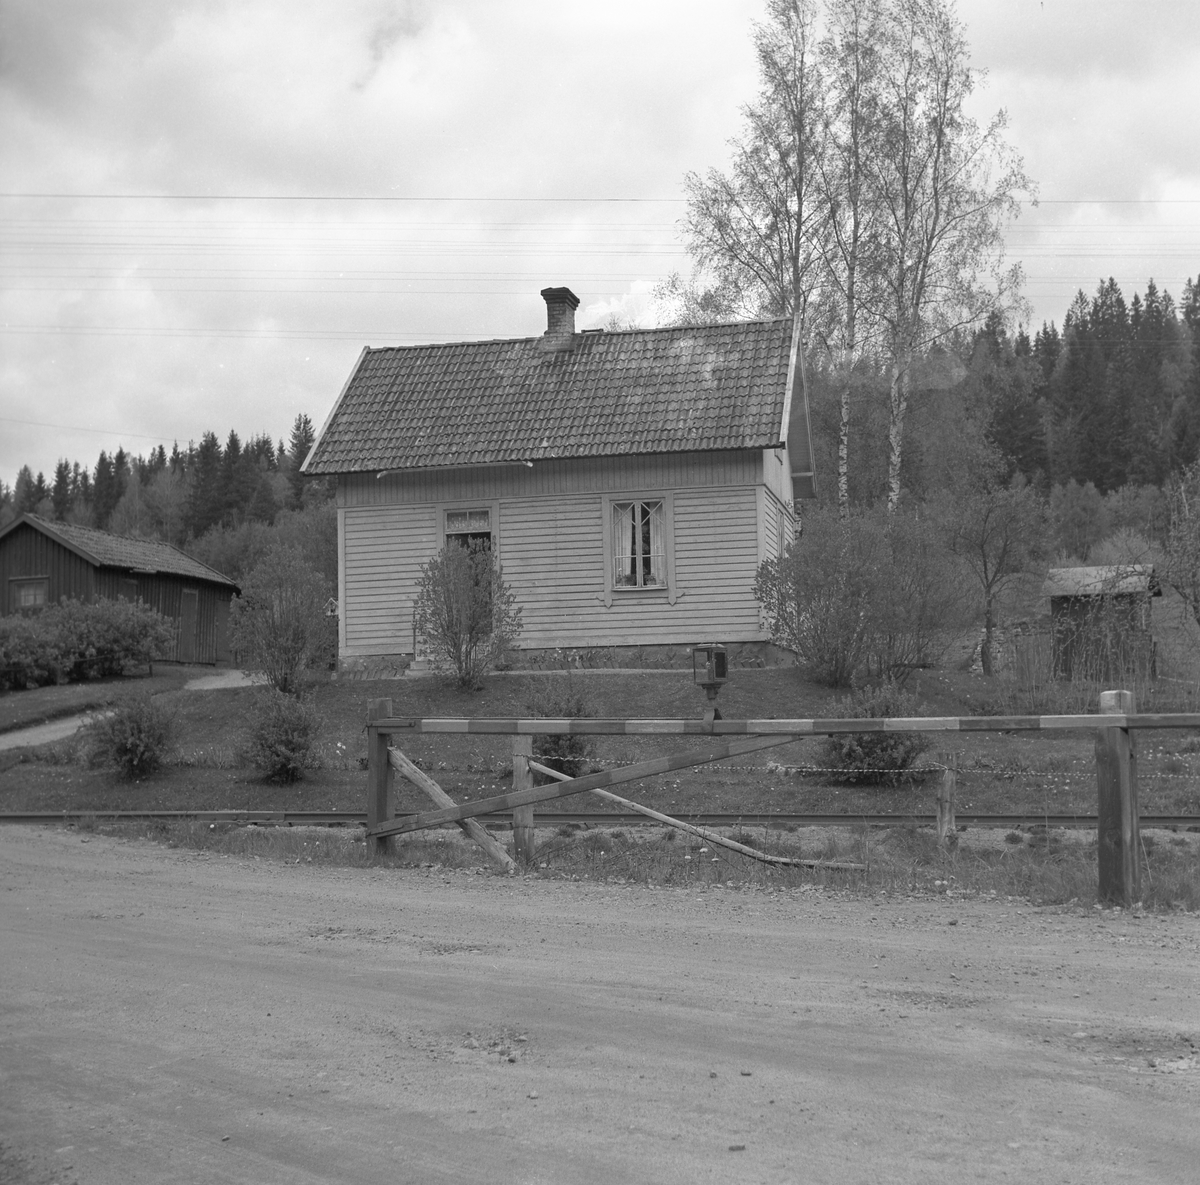 Skövde - Axvalls Järnväg, SAJ, banvaktstugan vid Stenberget på linjen mellan Våmbsklevens hållplats och Billingens hållplats. 1870 års Varnhemsväg korsar järnvägen. En av arbetlagsledarna för SAJ banbygge 1902 - 1904 var Gustav Karlsson. Han blev senare banvakt med placering i banvaktstugan vid Stenberget där han tjänstgrorde fram till 1945.